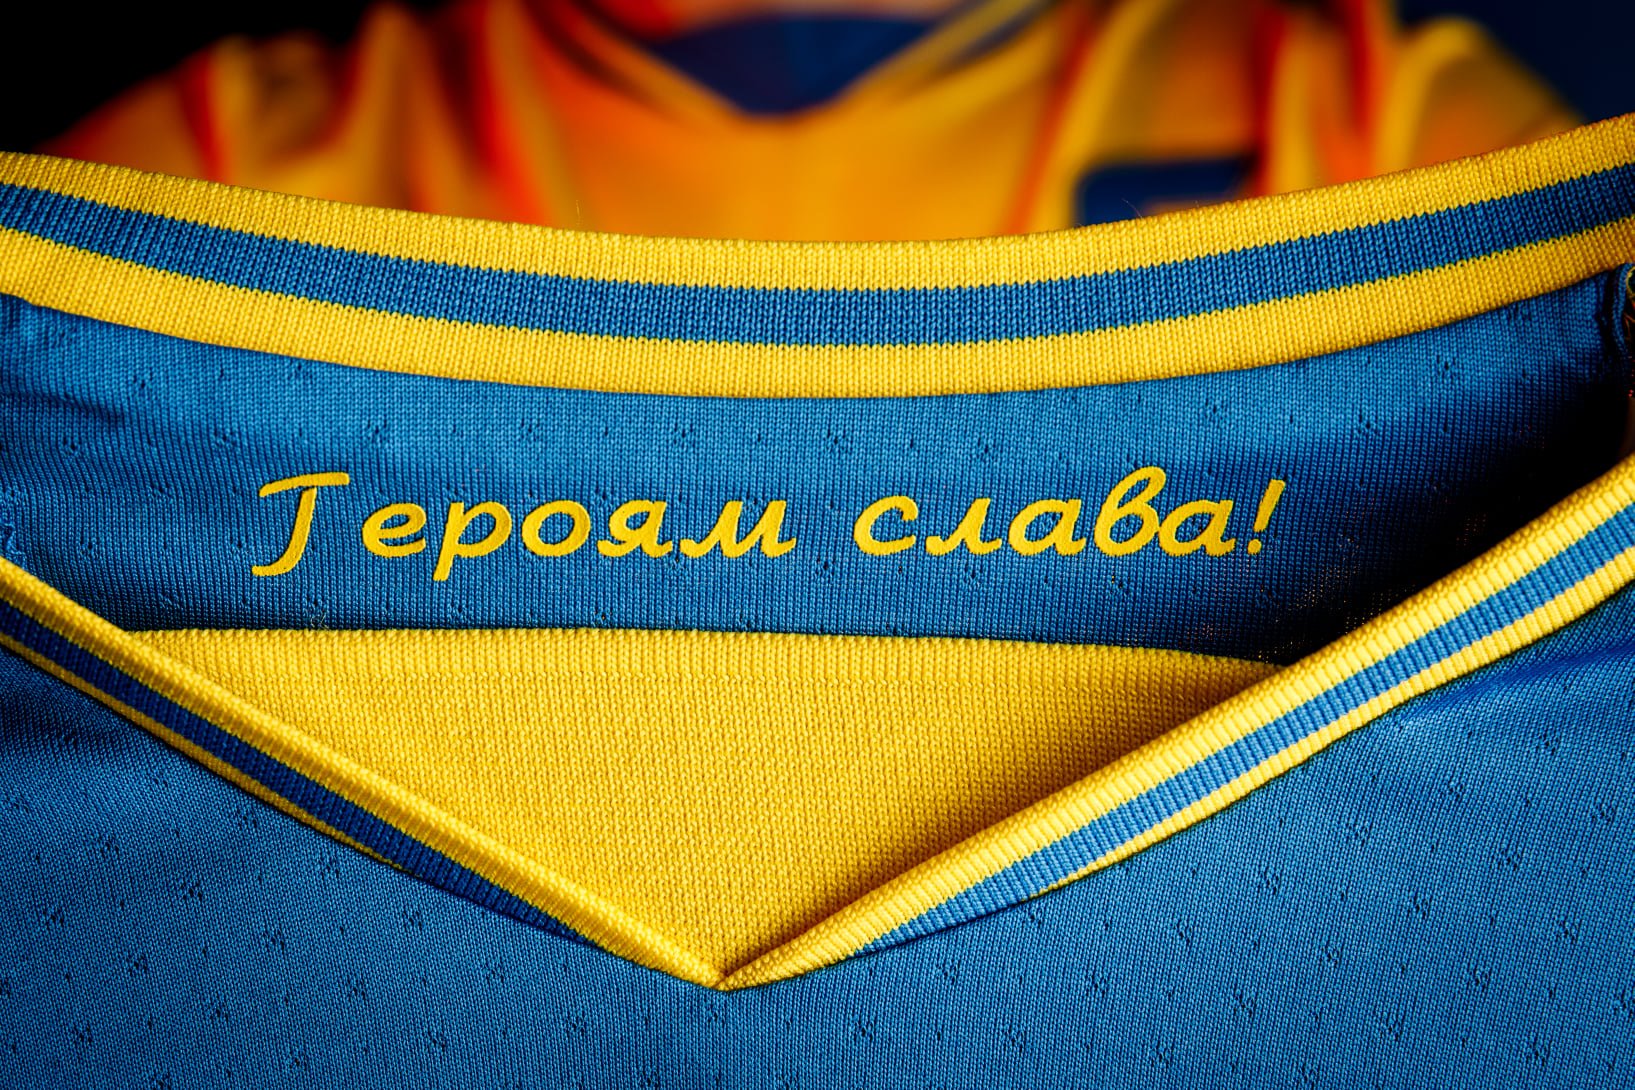 Збірна України досягла "переможного компромісу" з УЄФА щодо гасла "Героям слава!" на формі